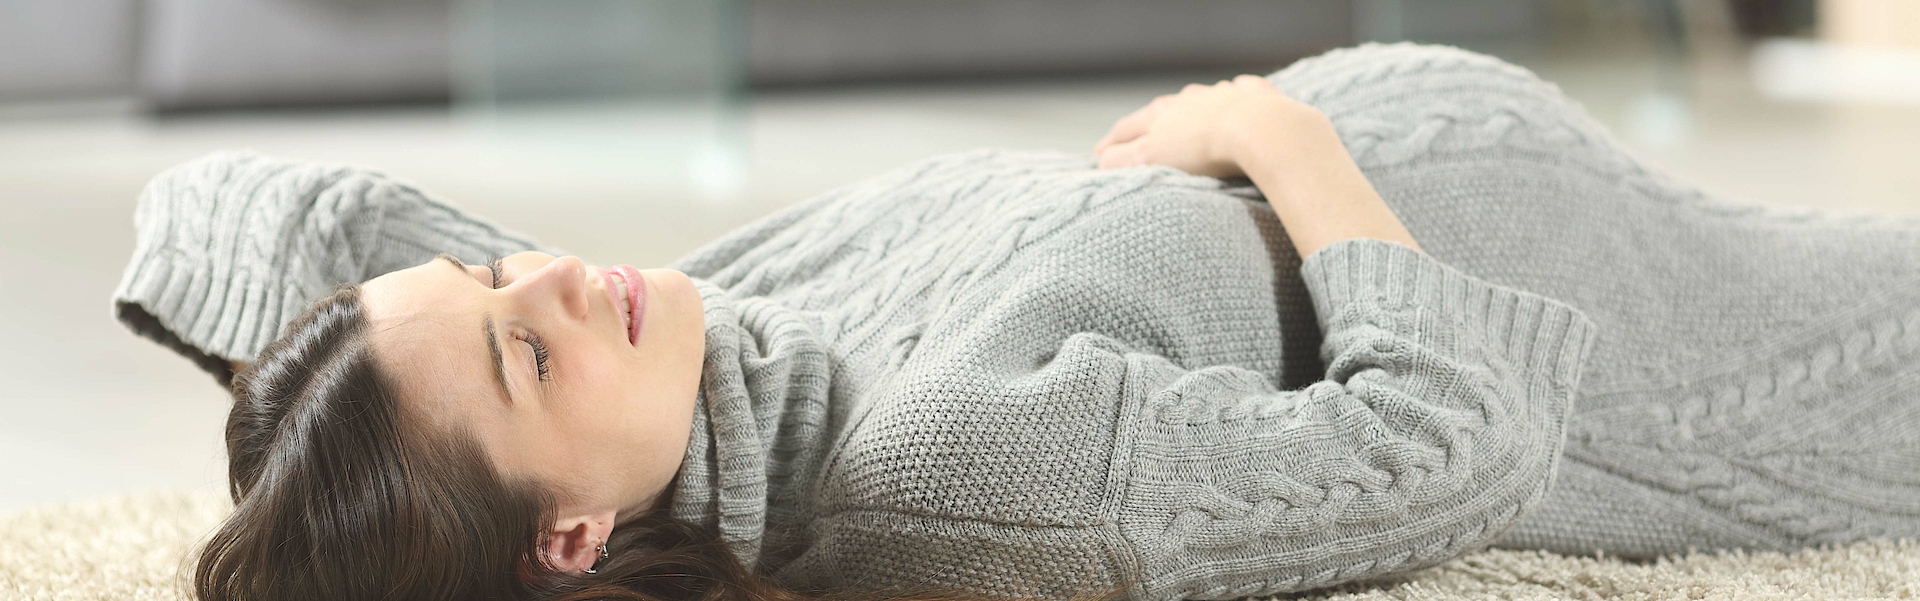 Eine schwangere junge Frau liegt auf einem Teppich. Sie hat ein graues Strickkleid an. Ihre rechte Hand ruht entspannt auf ihrem Bauch. Sie hat die Augen geschlossen und entspannt sich.